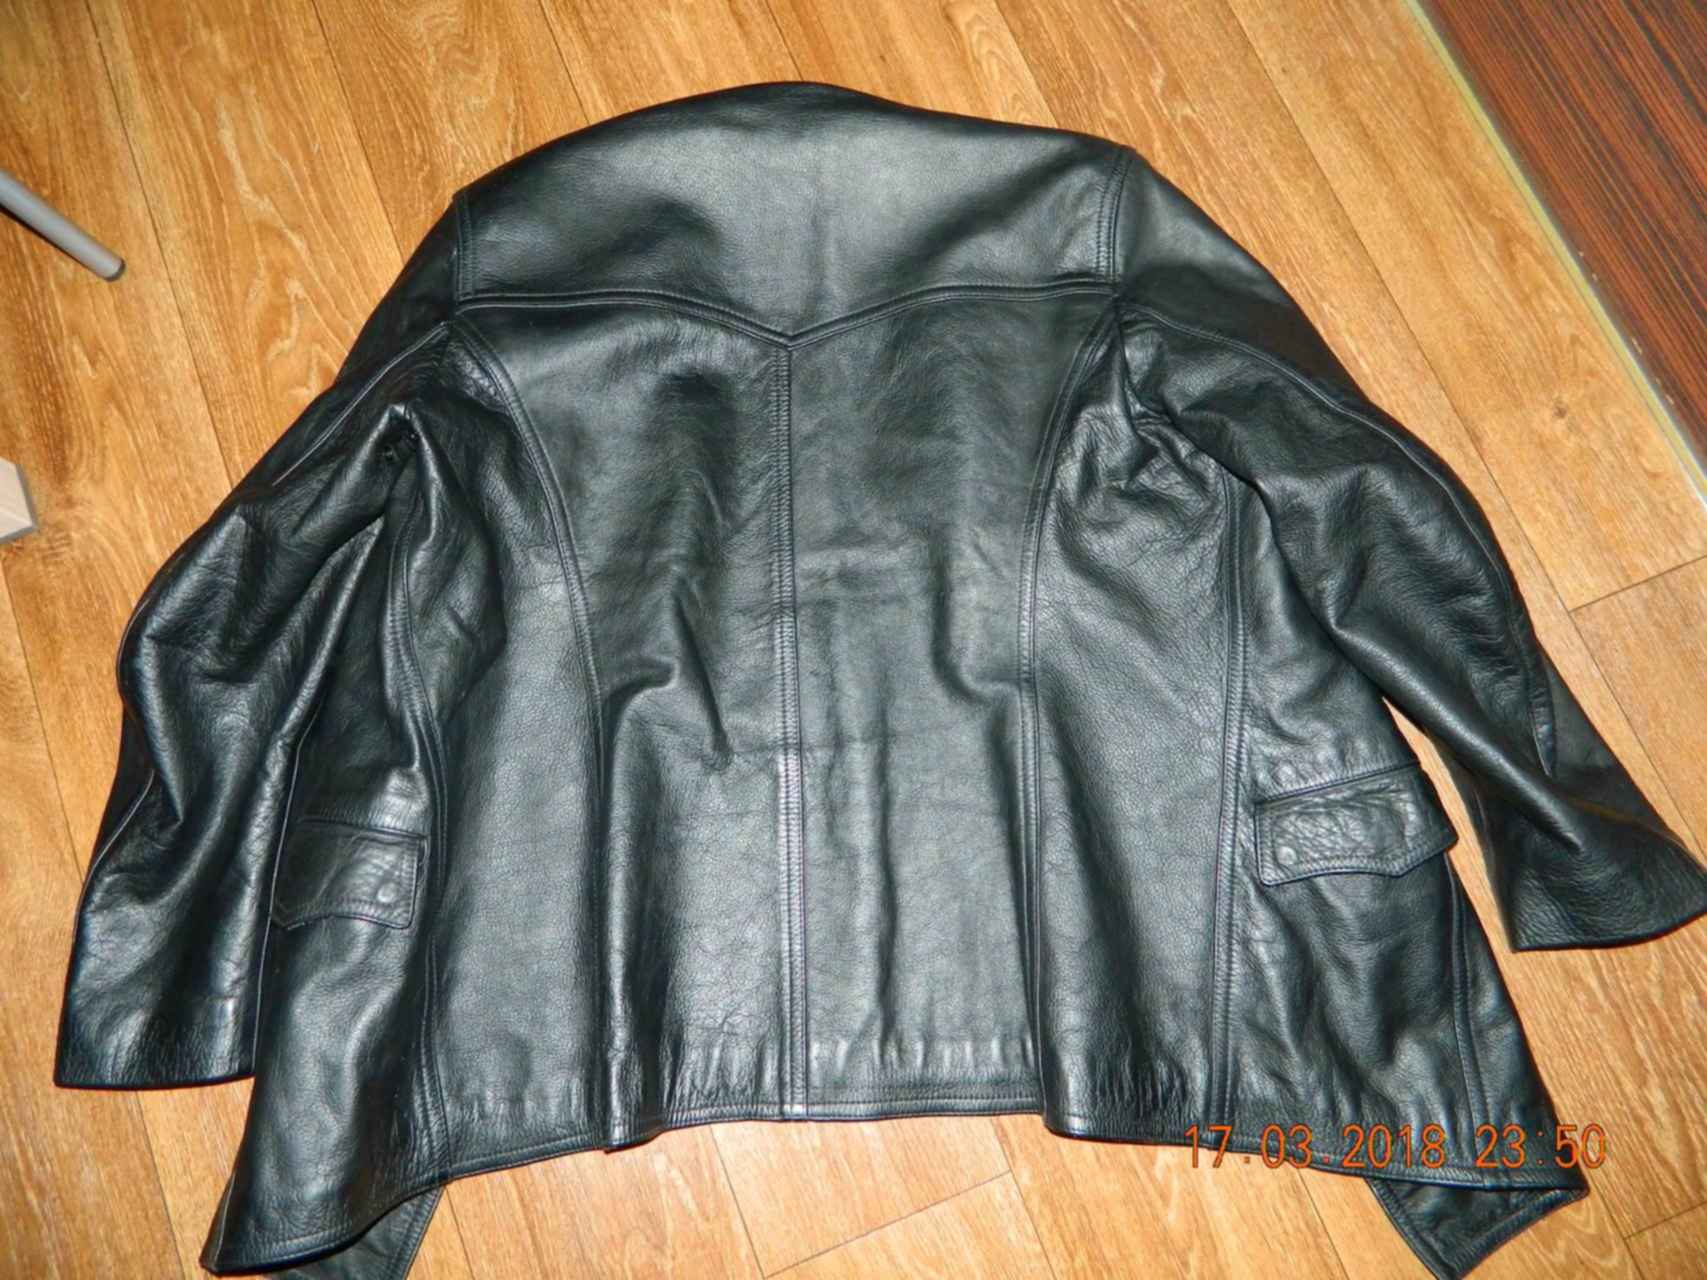 Куплю кожаную куртку б у. Кожаная куртка милиции. Куртка полиции кожзам. Кожаная куртка милиции 2000 года. Старая большая кожаная куртка.